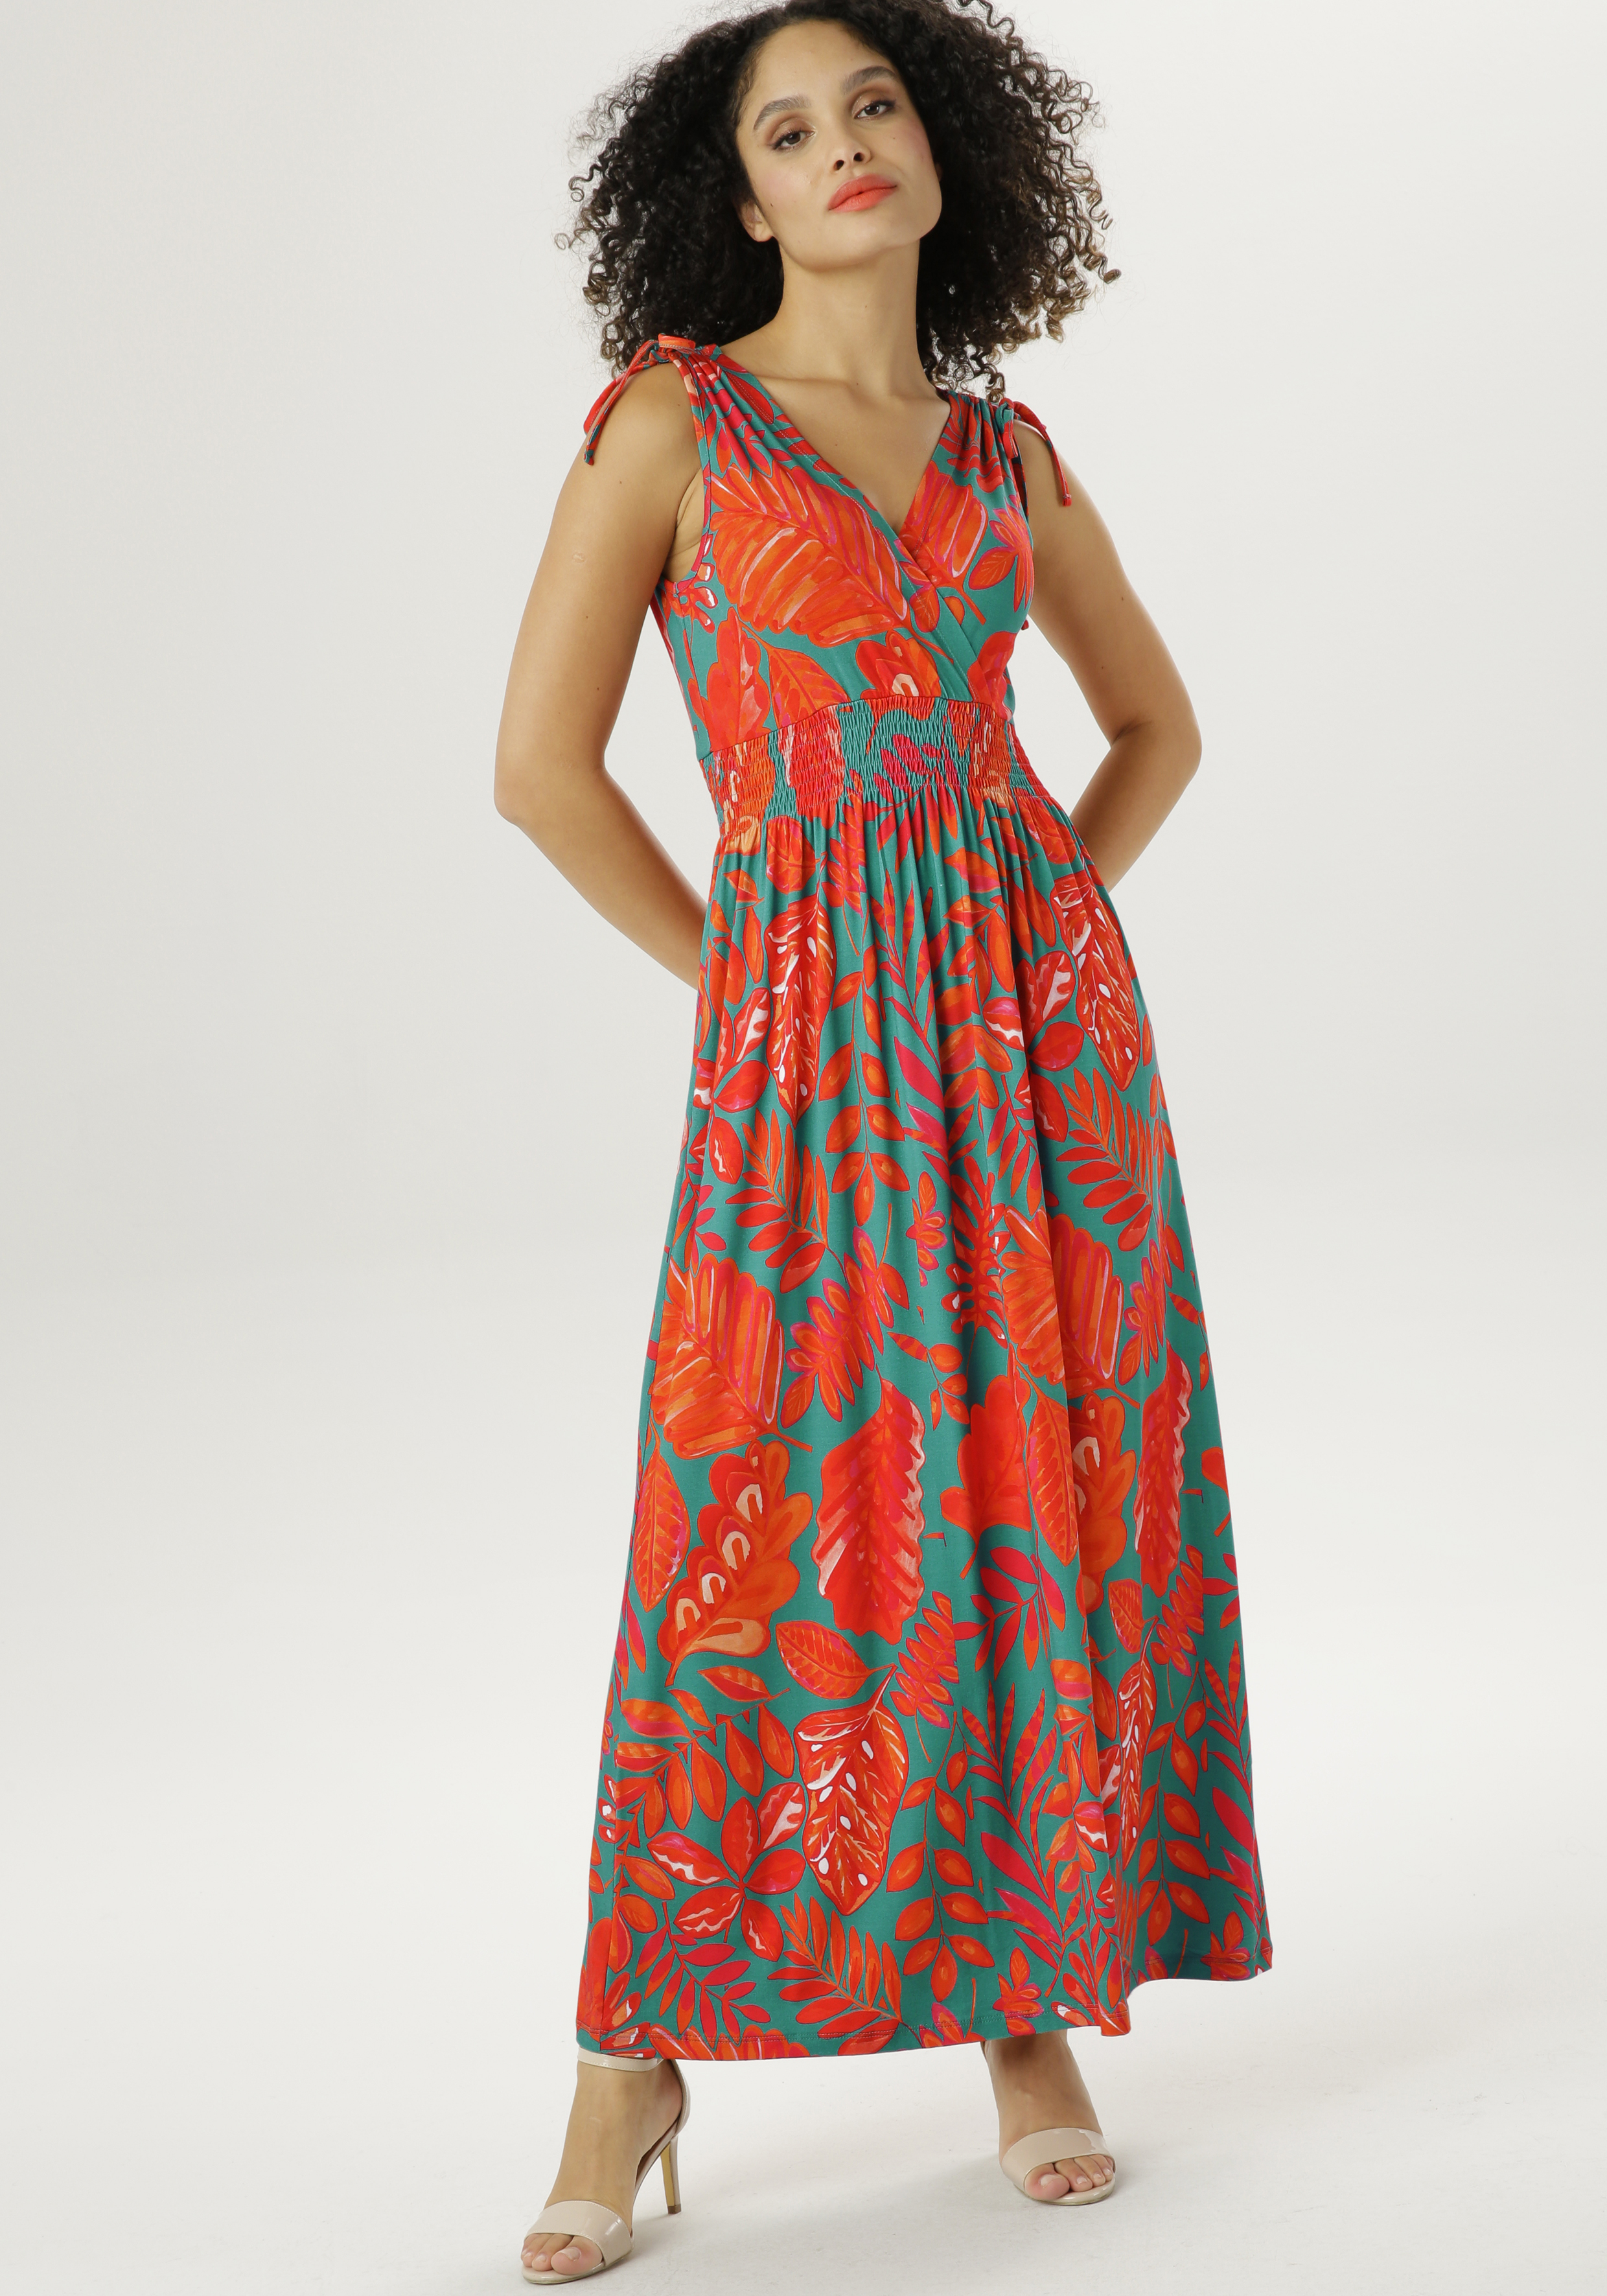 Raffung online an Jerseykleid, Taille kaufen der mit Benetton United of Colors